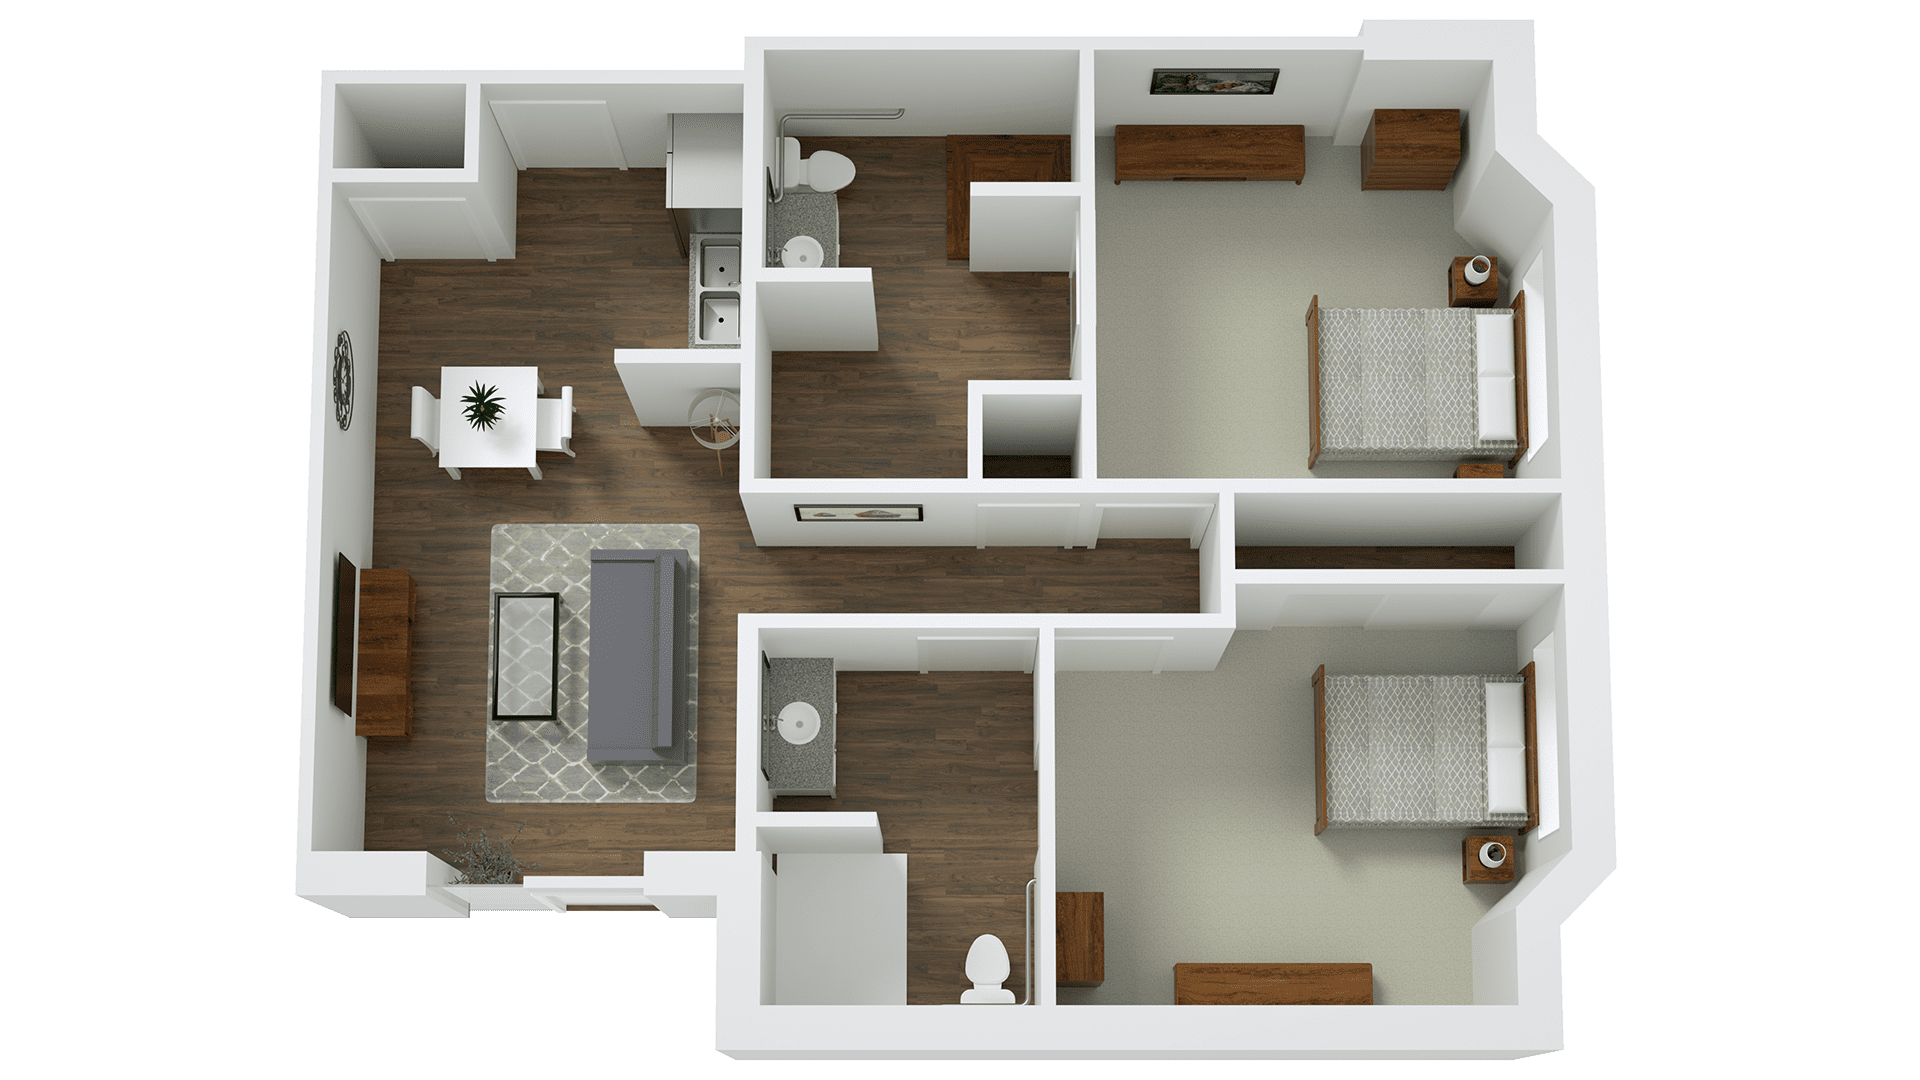 2 bedroom apartment, Multi-Family housing, Senior Living, 3D Floor Plan